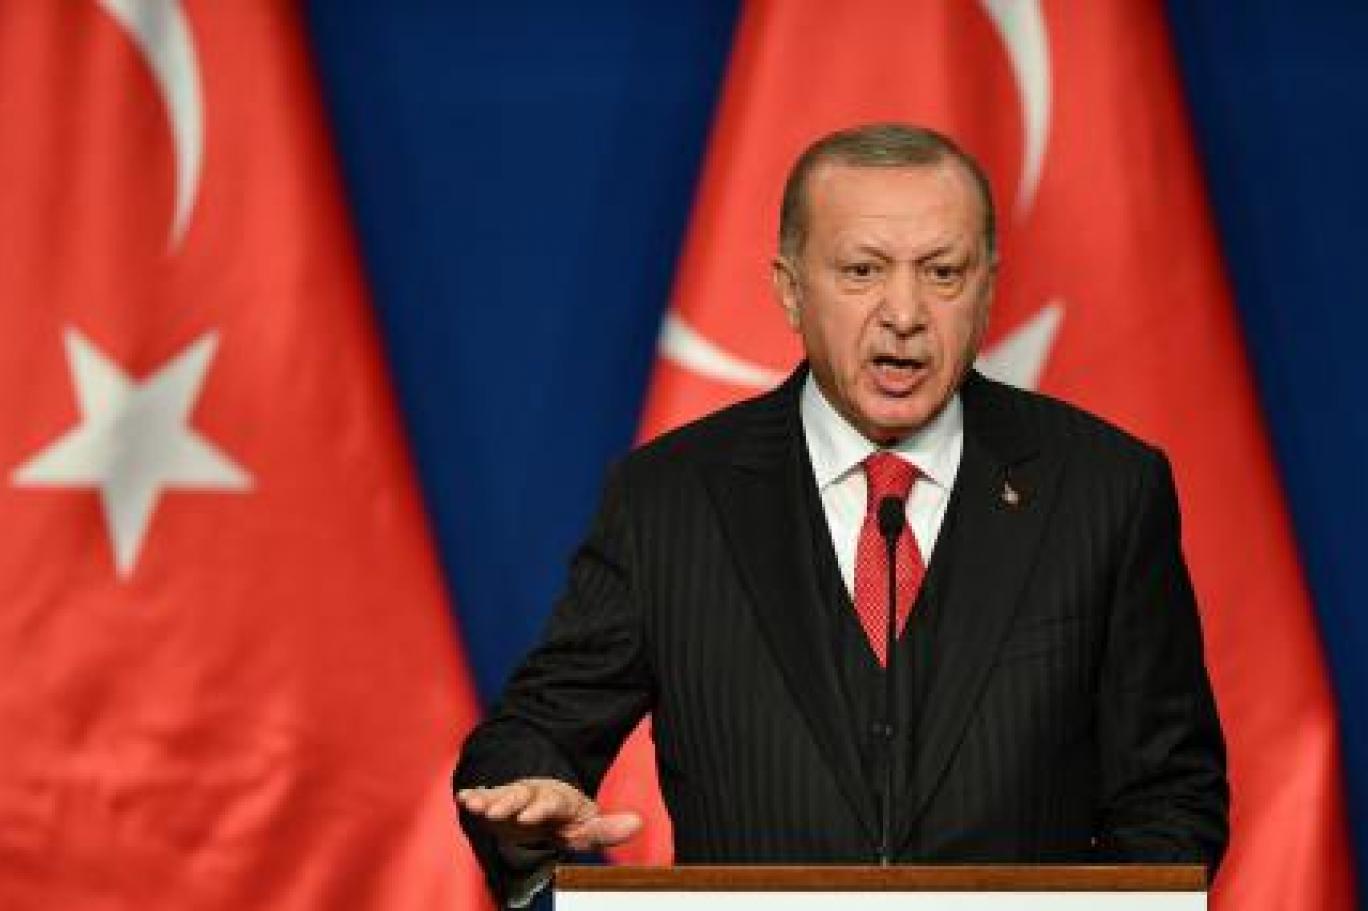   عقوبات قاسية على تركيا